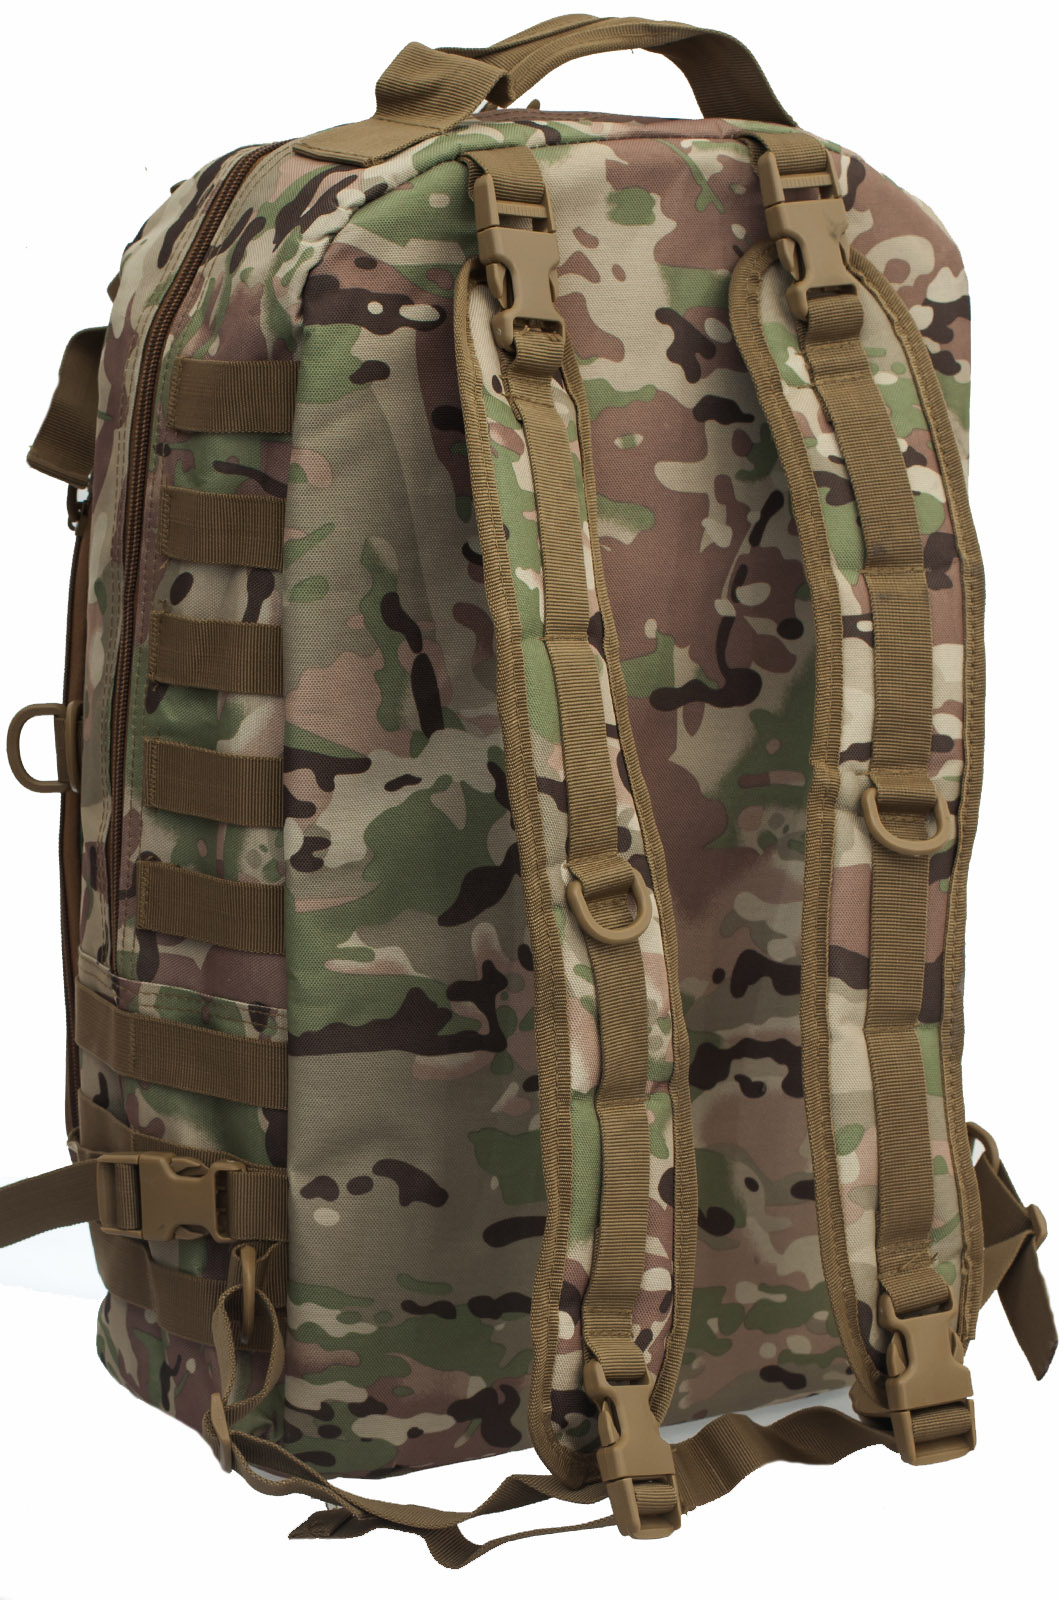 Купить рейдовый армейский рюкзак с нашивкой ФСО оптом или в розницу